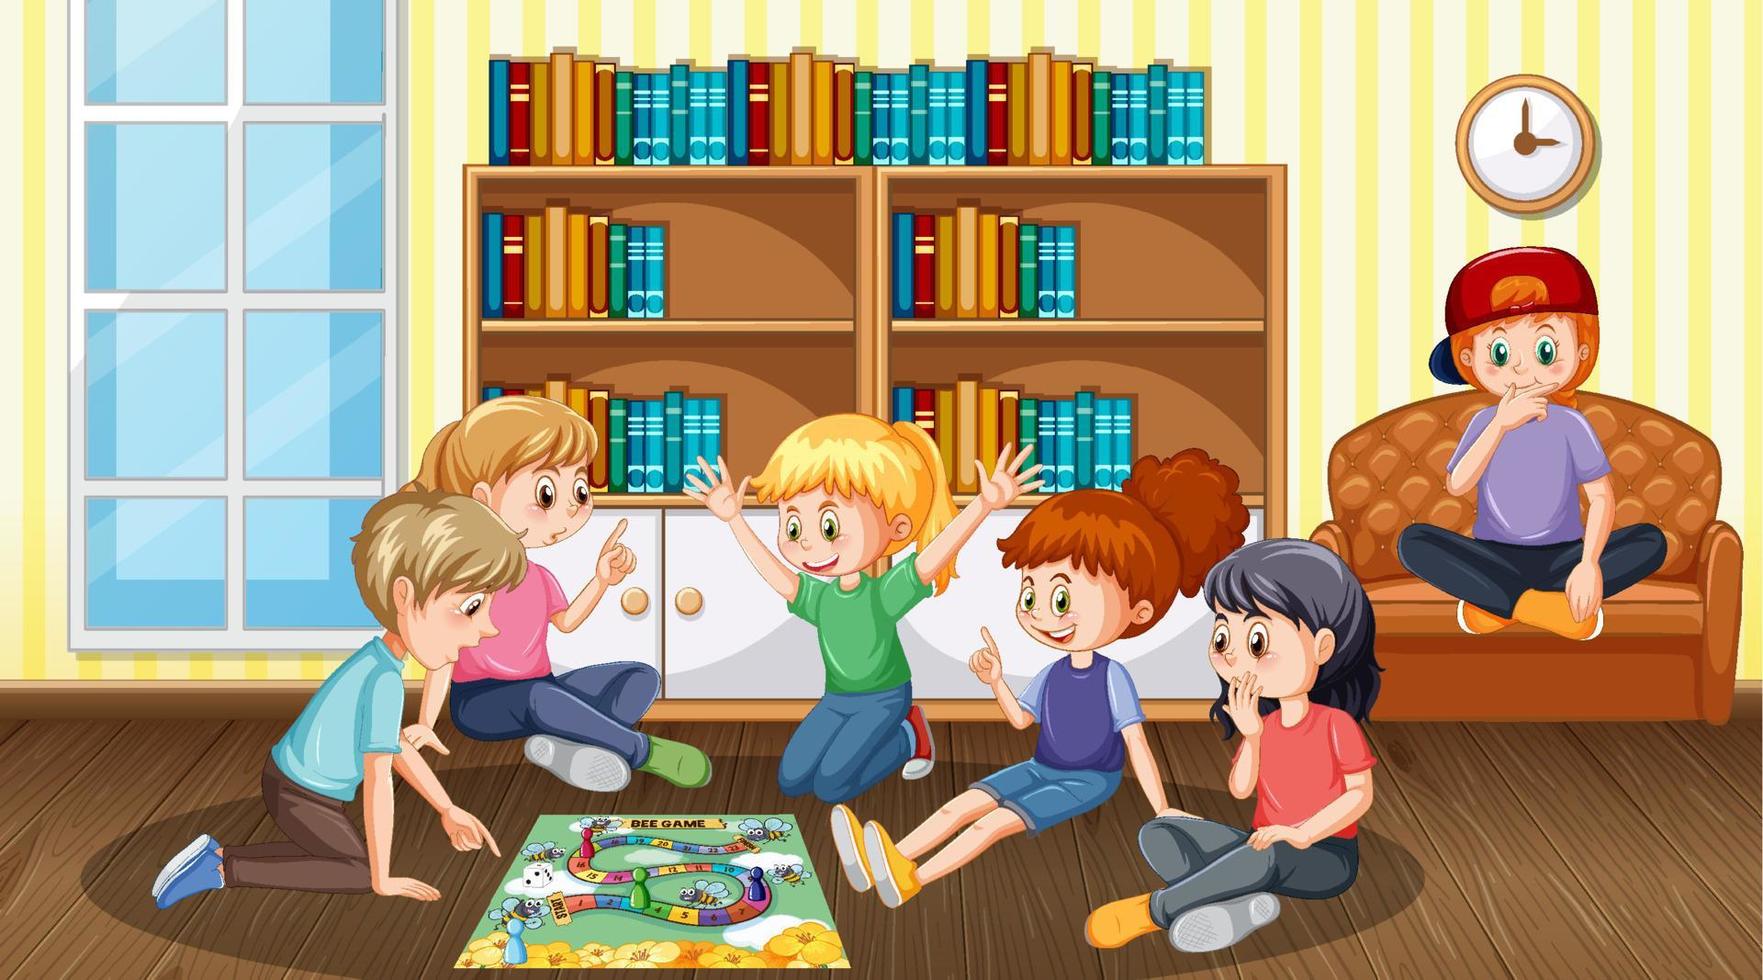 Kinder spielen Brettspiel in der Bibliothek vektor